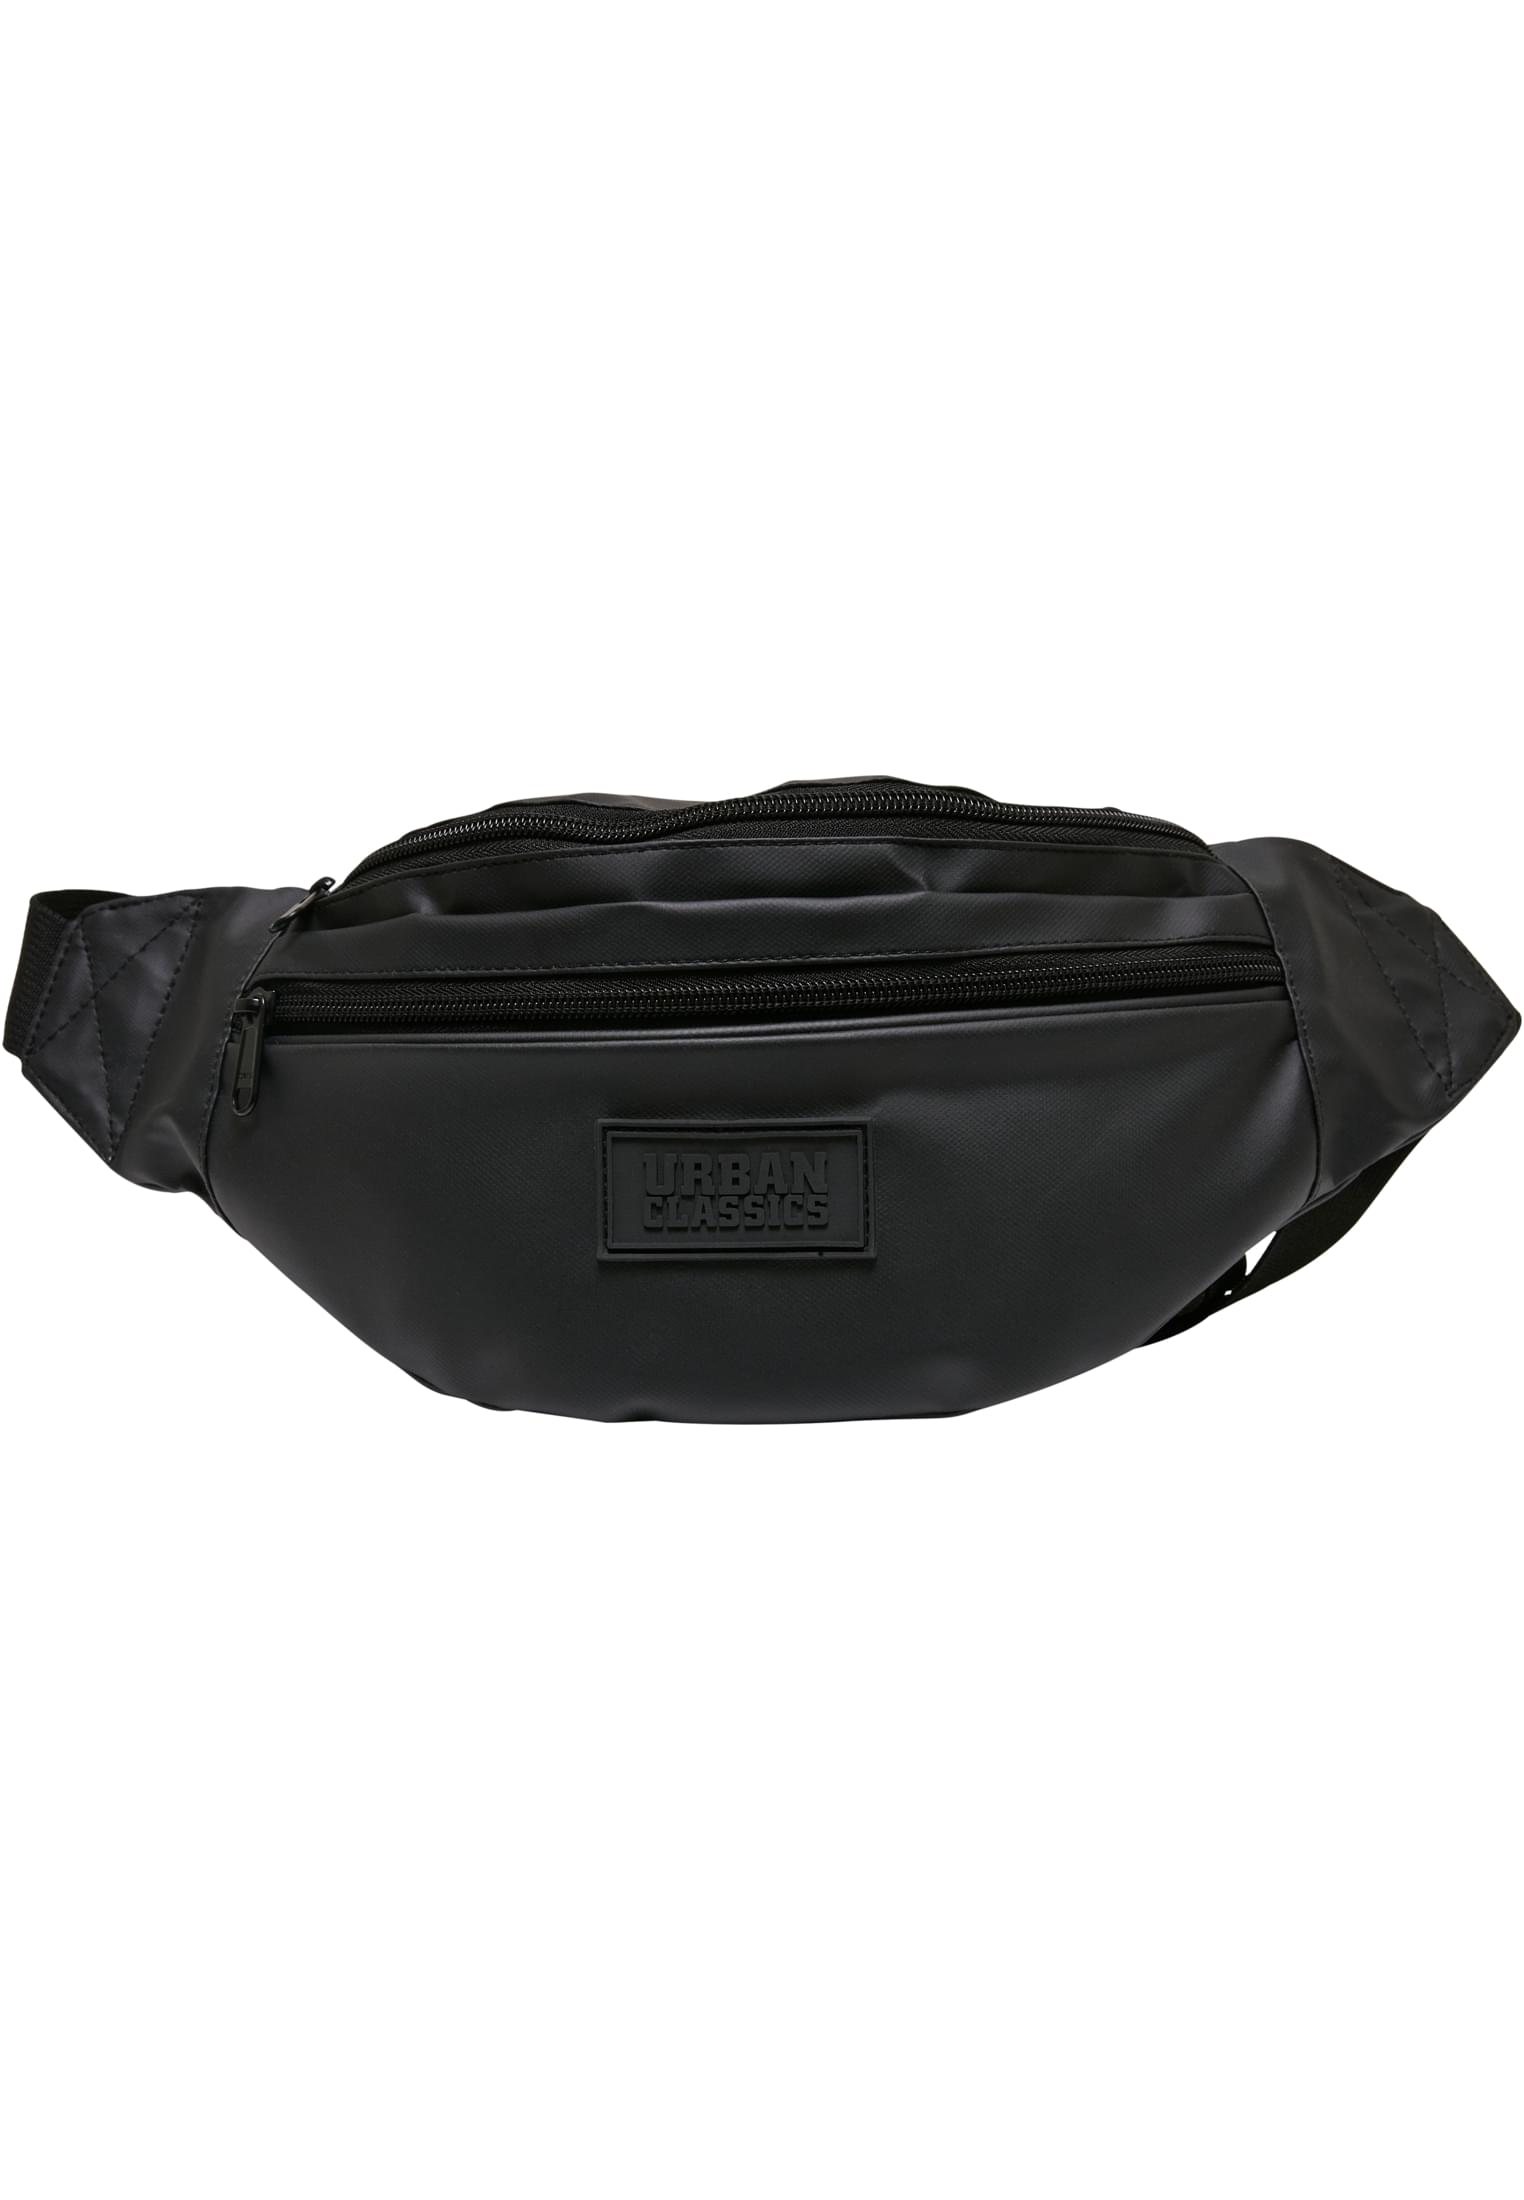 Coated basic shoulder bag black